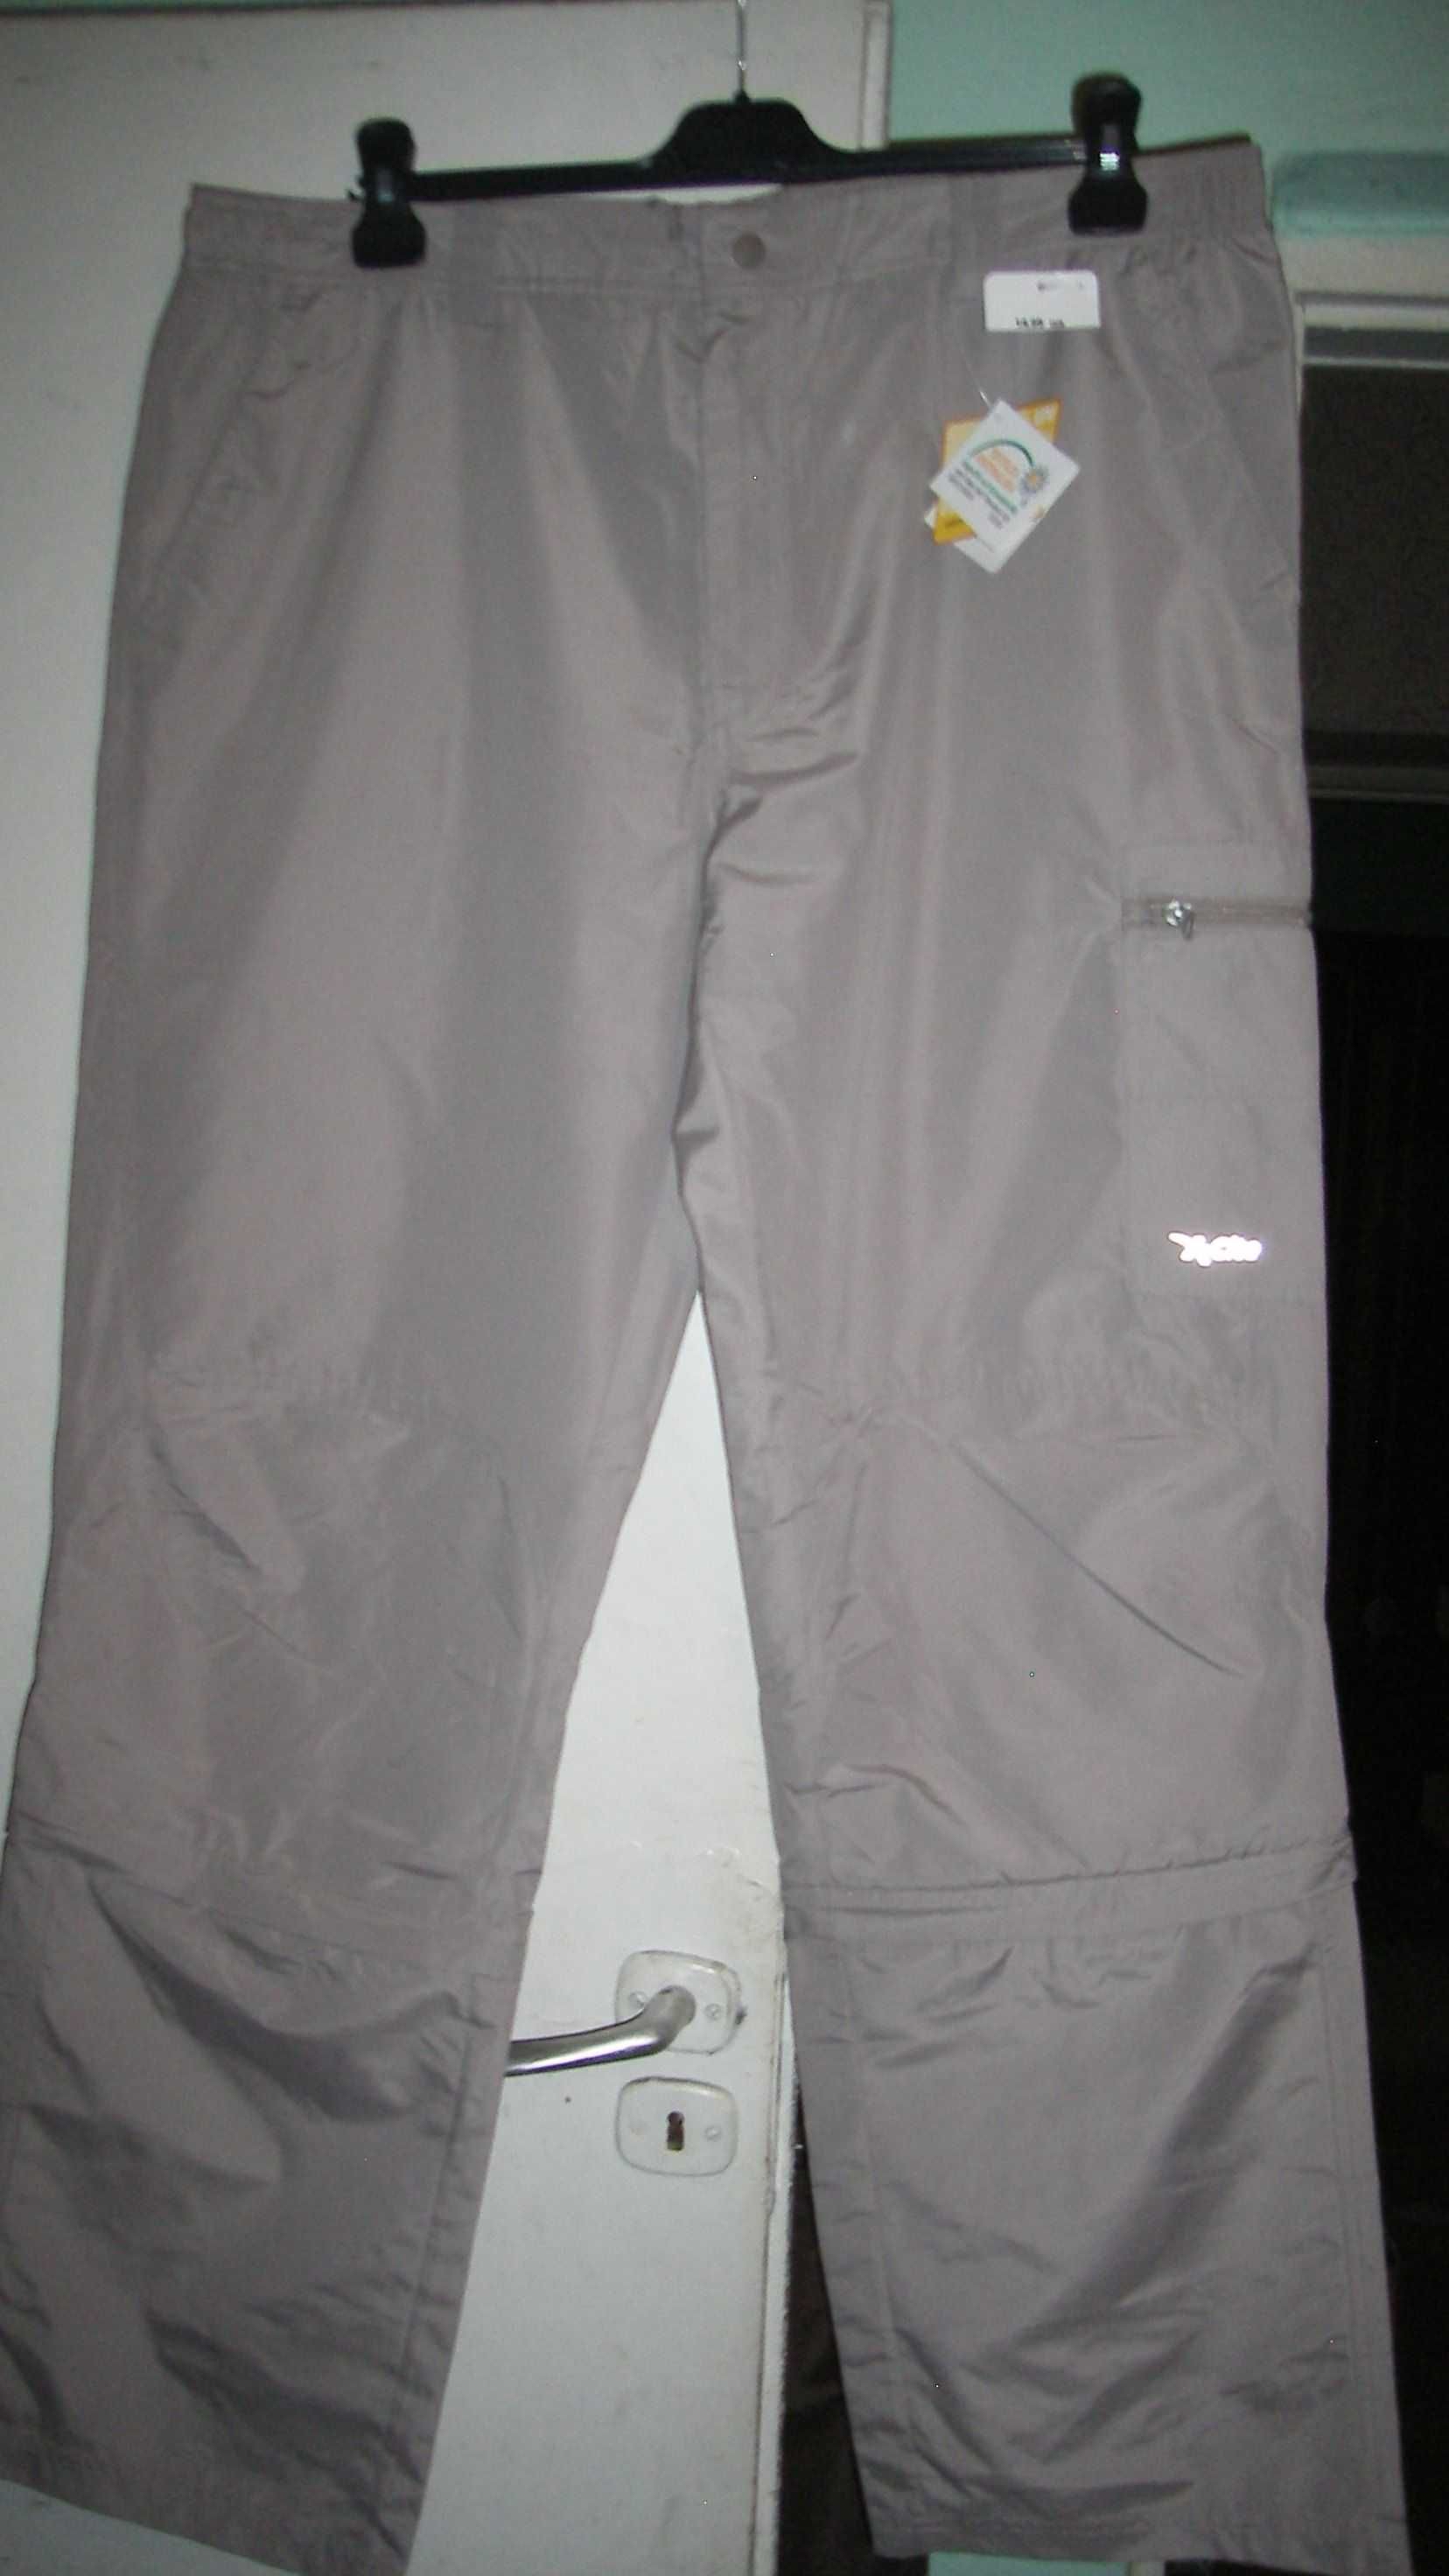 duże letnie spodnie beżowe roz.48 pas do 96cm z odpinaną nogawką